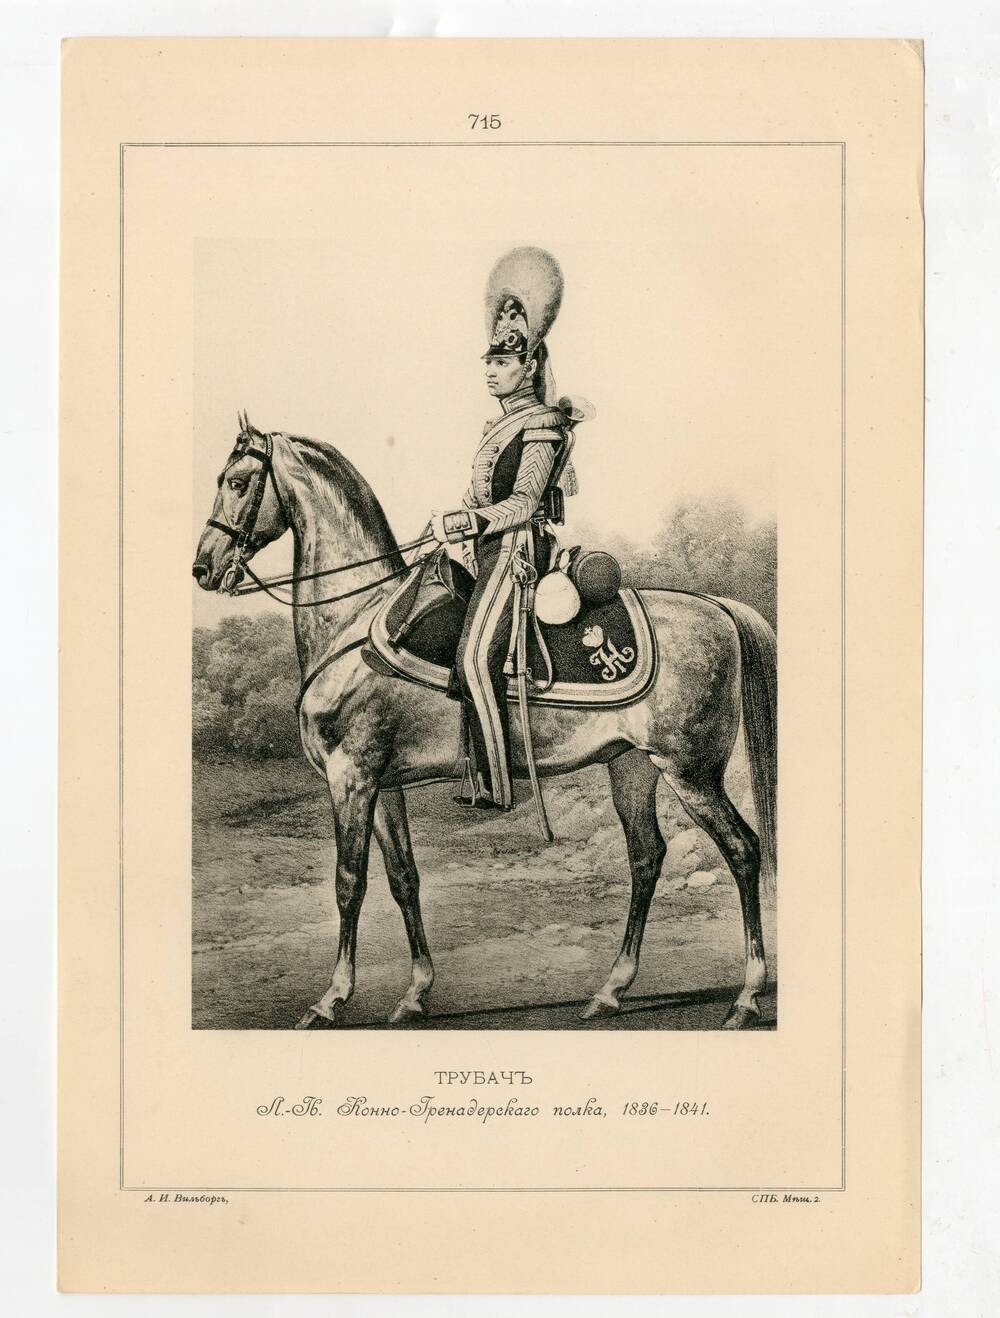 Литография Трубач Лейб-Гвардии Конно-Гренадерского полка, 1836-1841